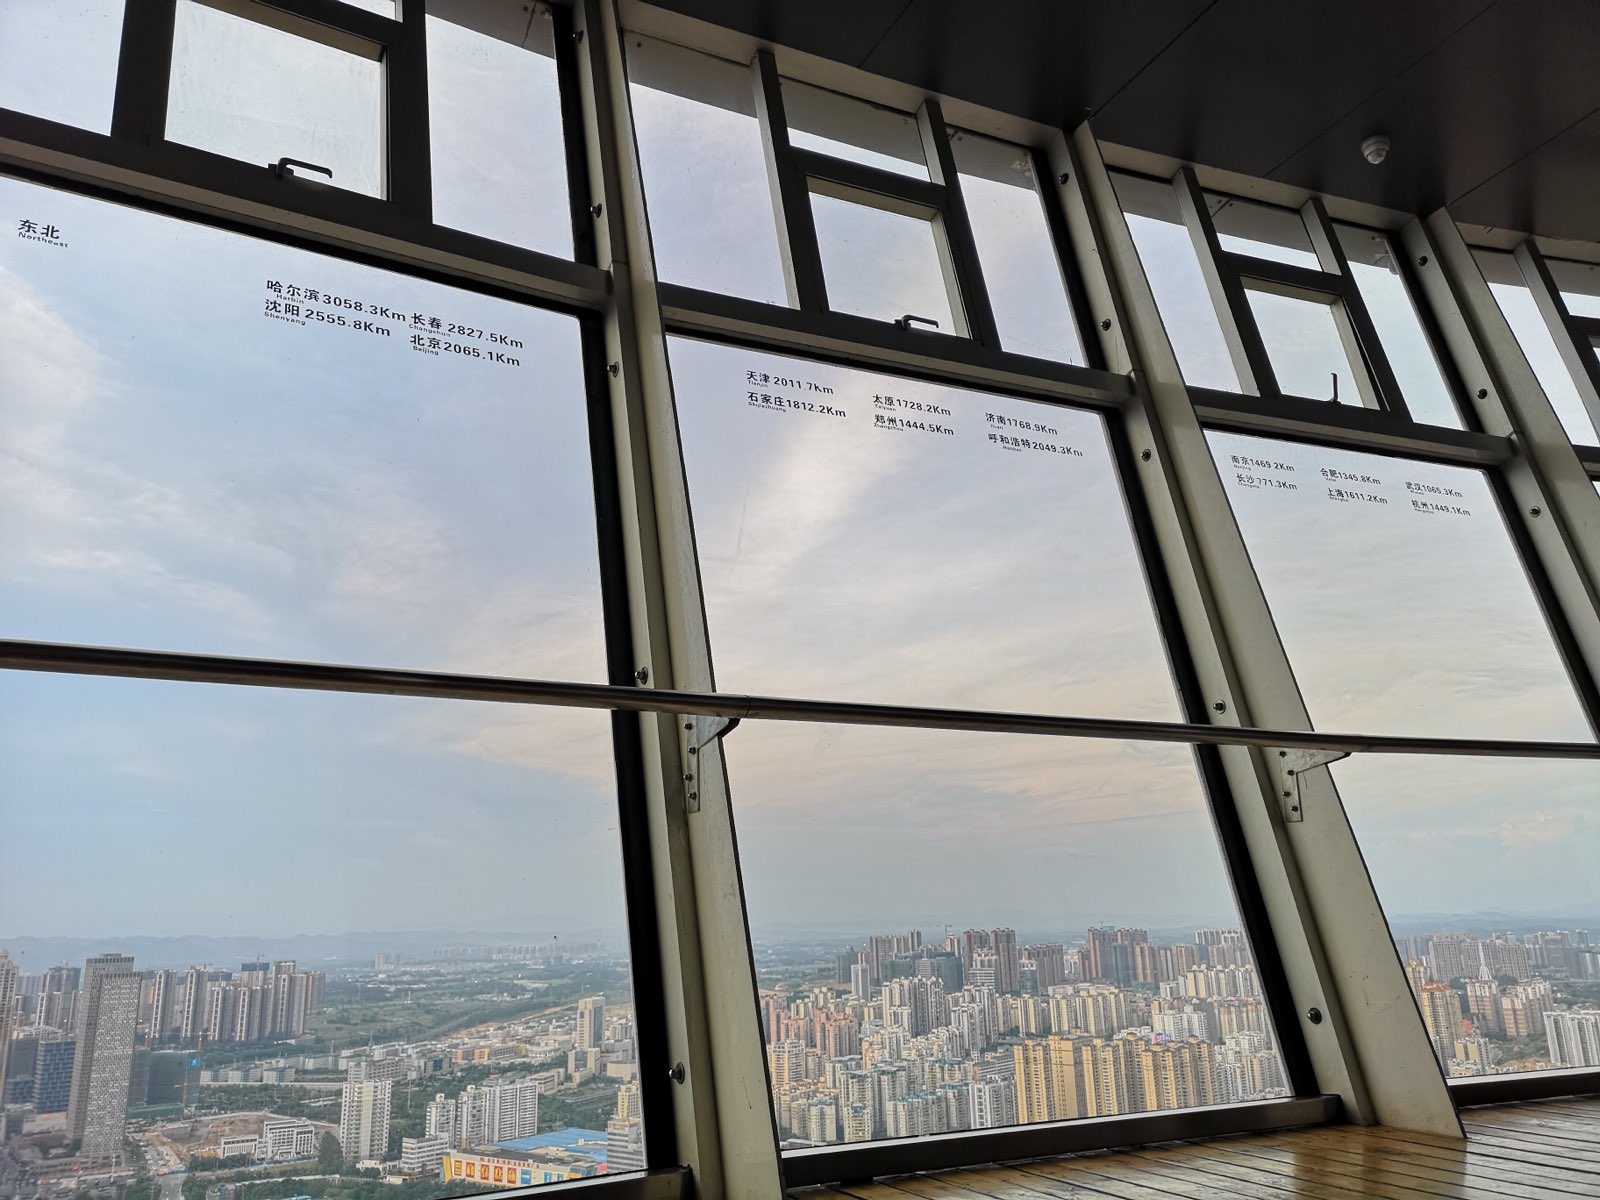 卖点是中国西南最高楼，可360度俯瞰南宁市区。但绝大部分是隔着玻璃观望